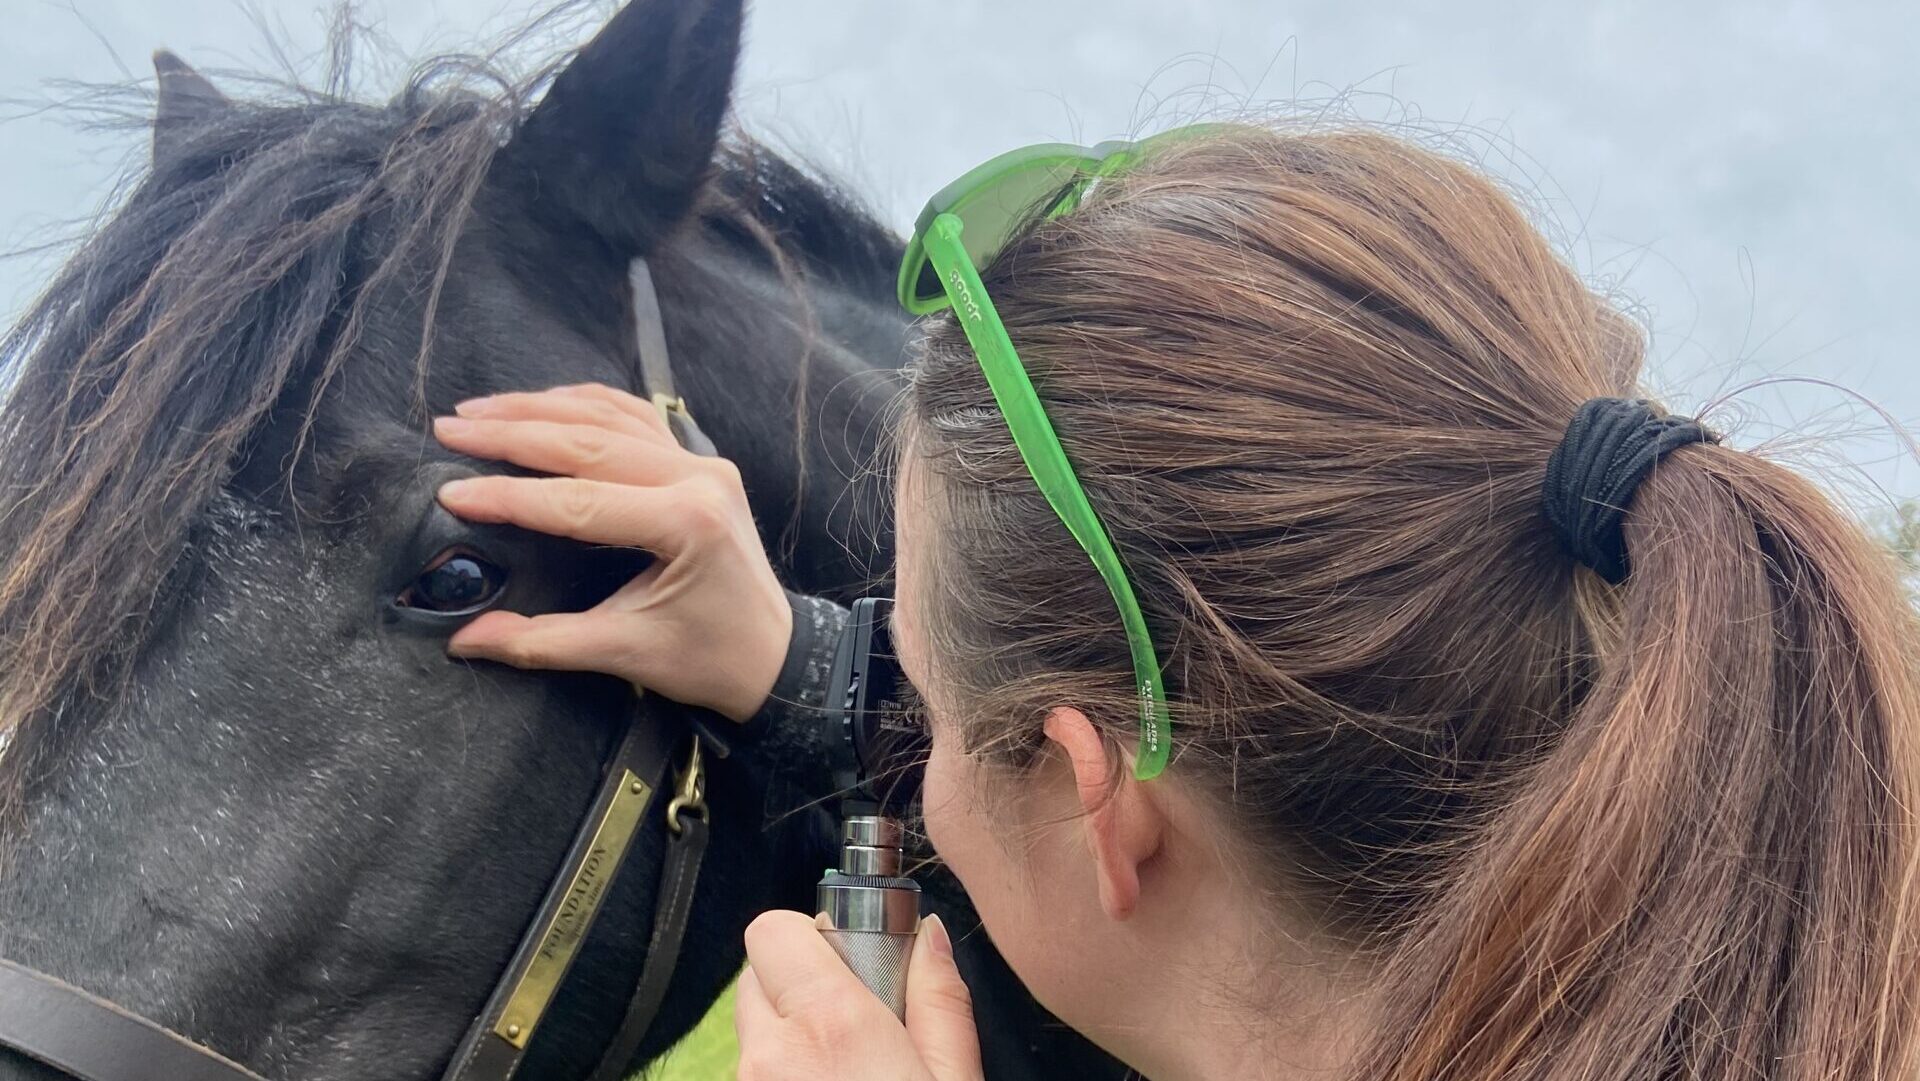 Briana Blackwelder examines a horse's eyes